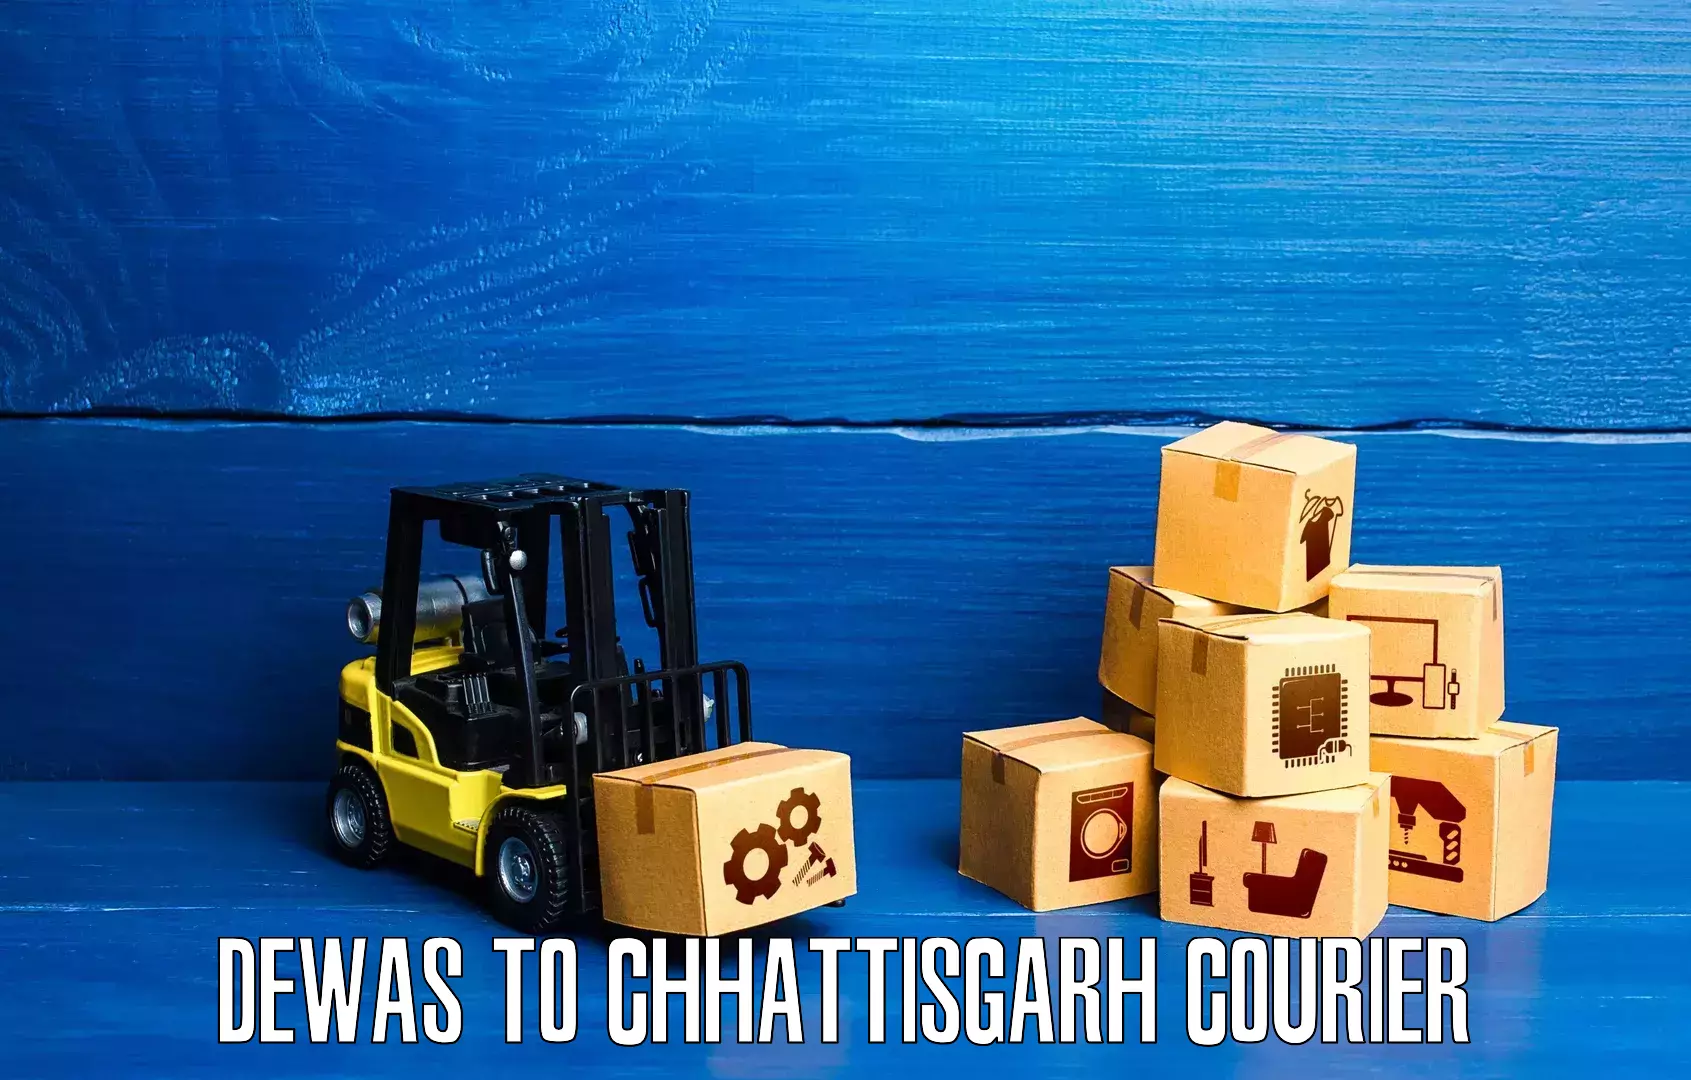 24/7 courier service Dewas to Chhattisgarh